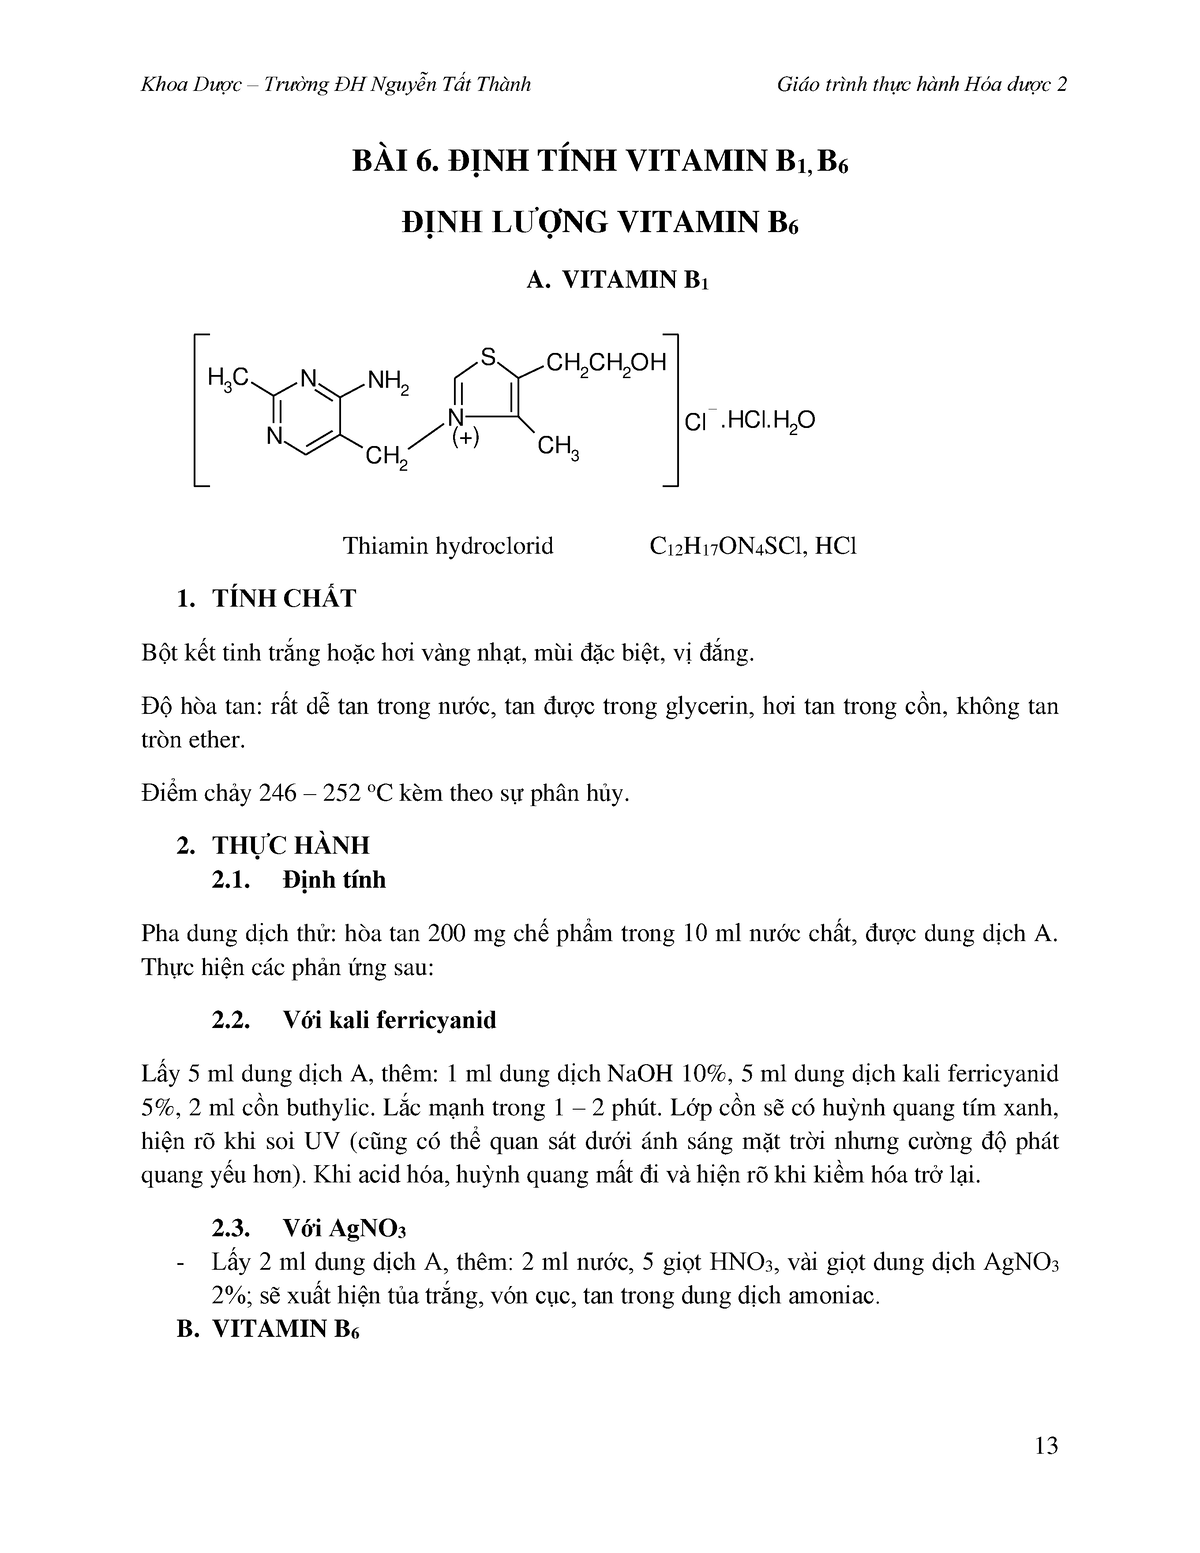 Tác dụng của định tính vitamin b1 và nguồn cung cấp chính